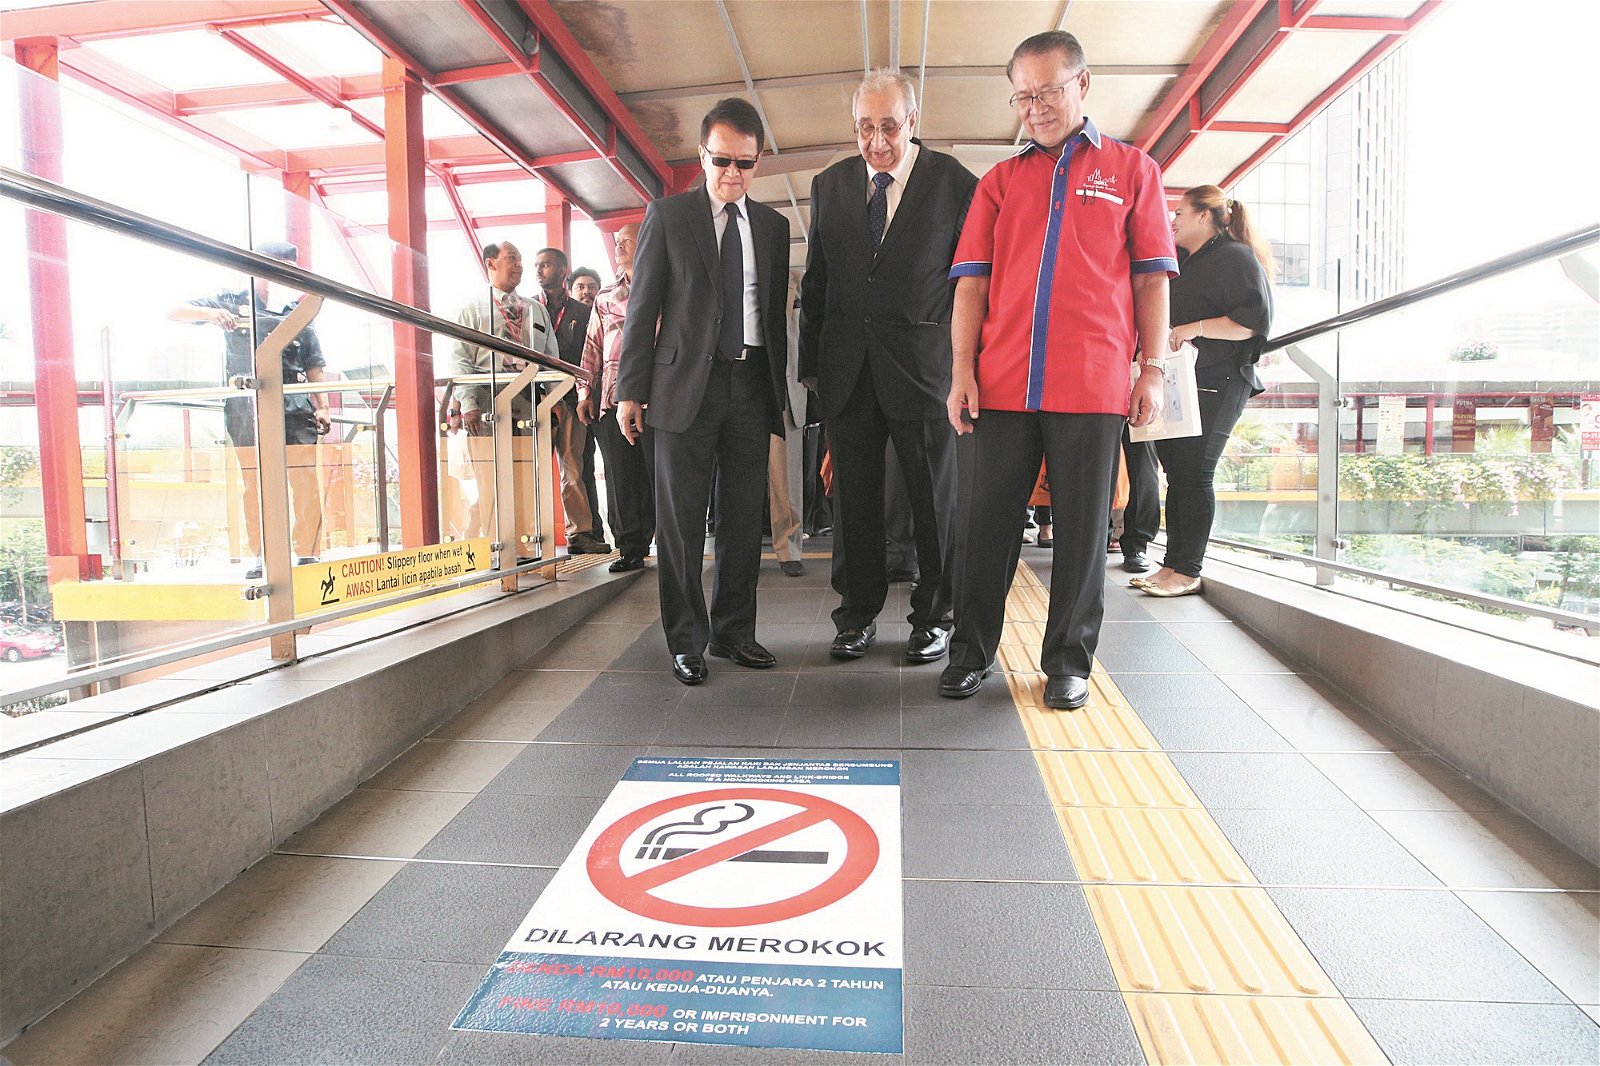 被吉隆坡市政局列为禁烟区的地点，都会贴上禁烟标志，一旦违规，将面对法律责任。阿敏诺丁（左3）巡视被列为禁烟区的双威布特拉太子购物广场的有盖人行道。左起为谢富年及乐卡佳。（摄影：伍信隆）